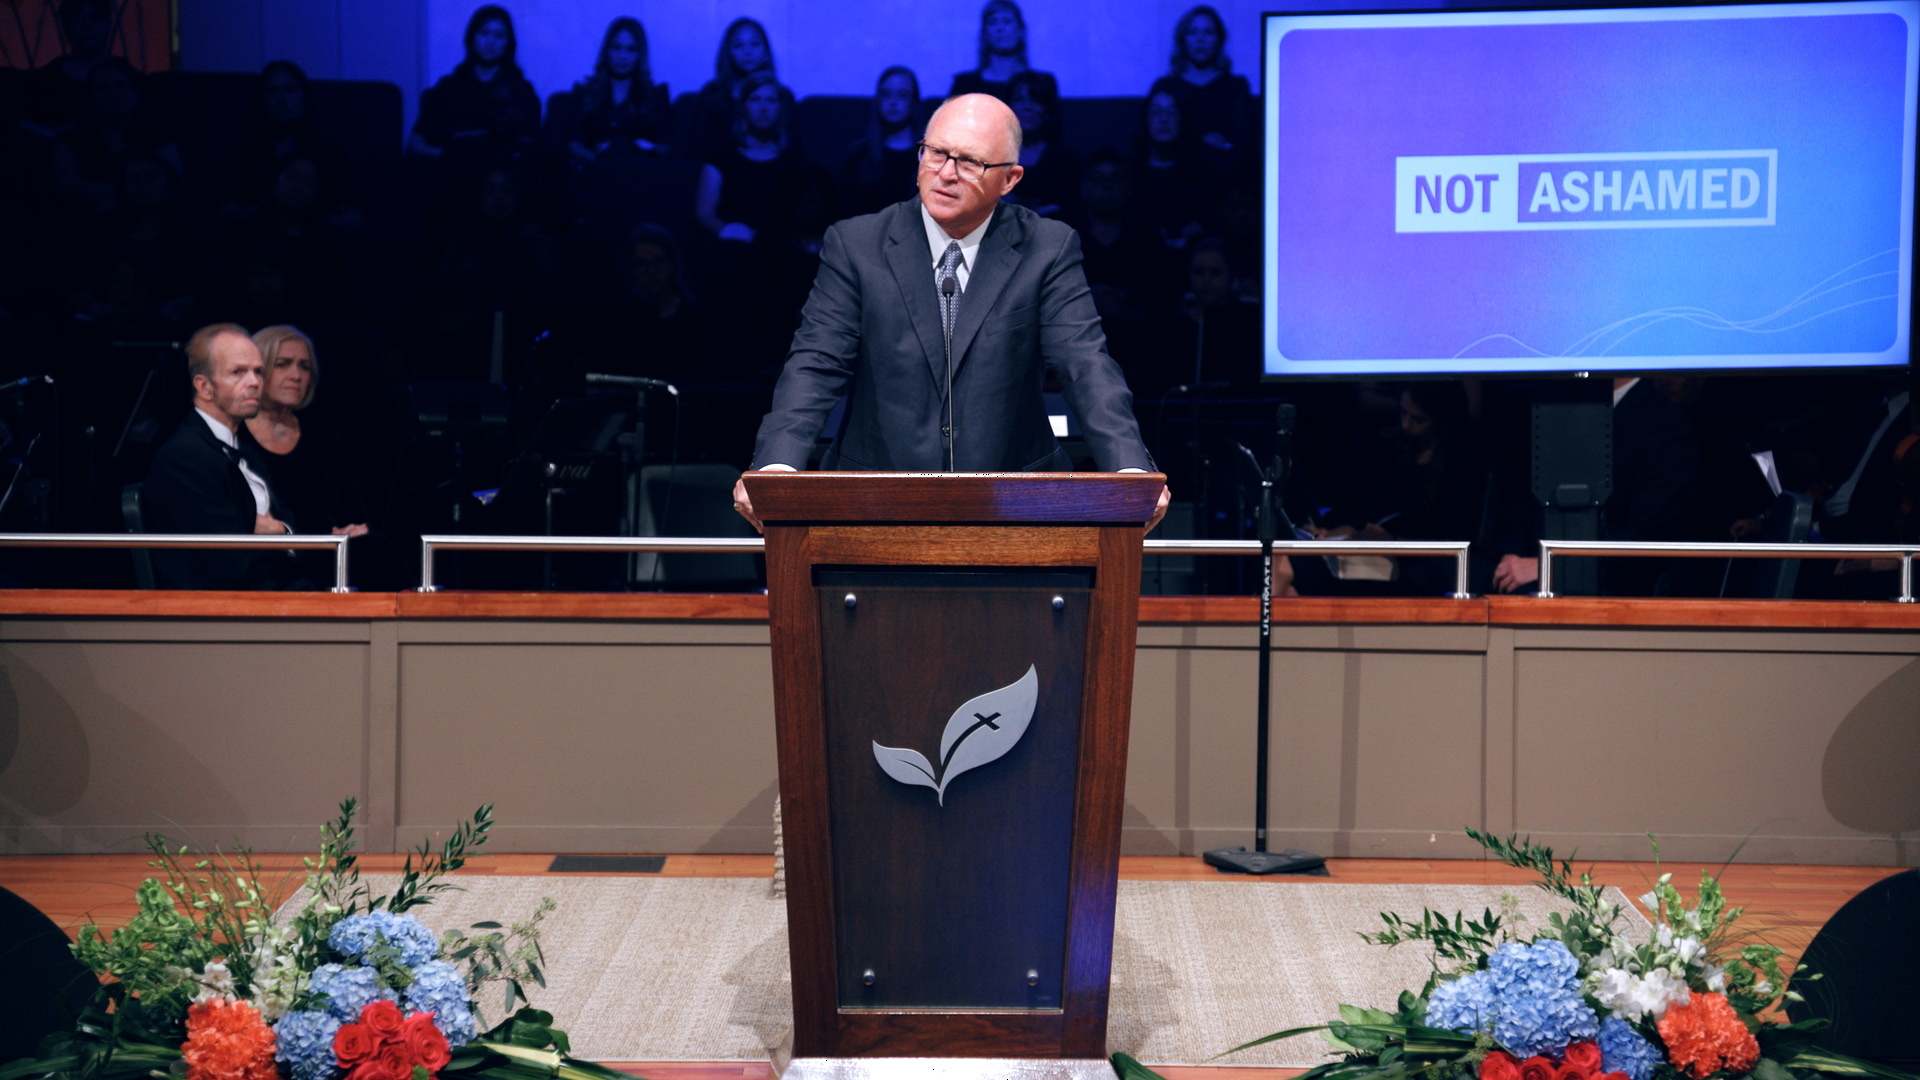 Pastor Paul Chappell: Not Ashamed